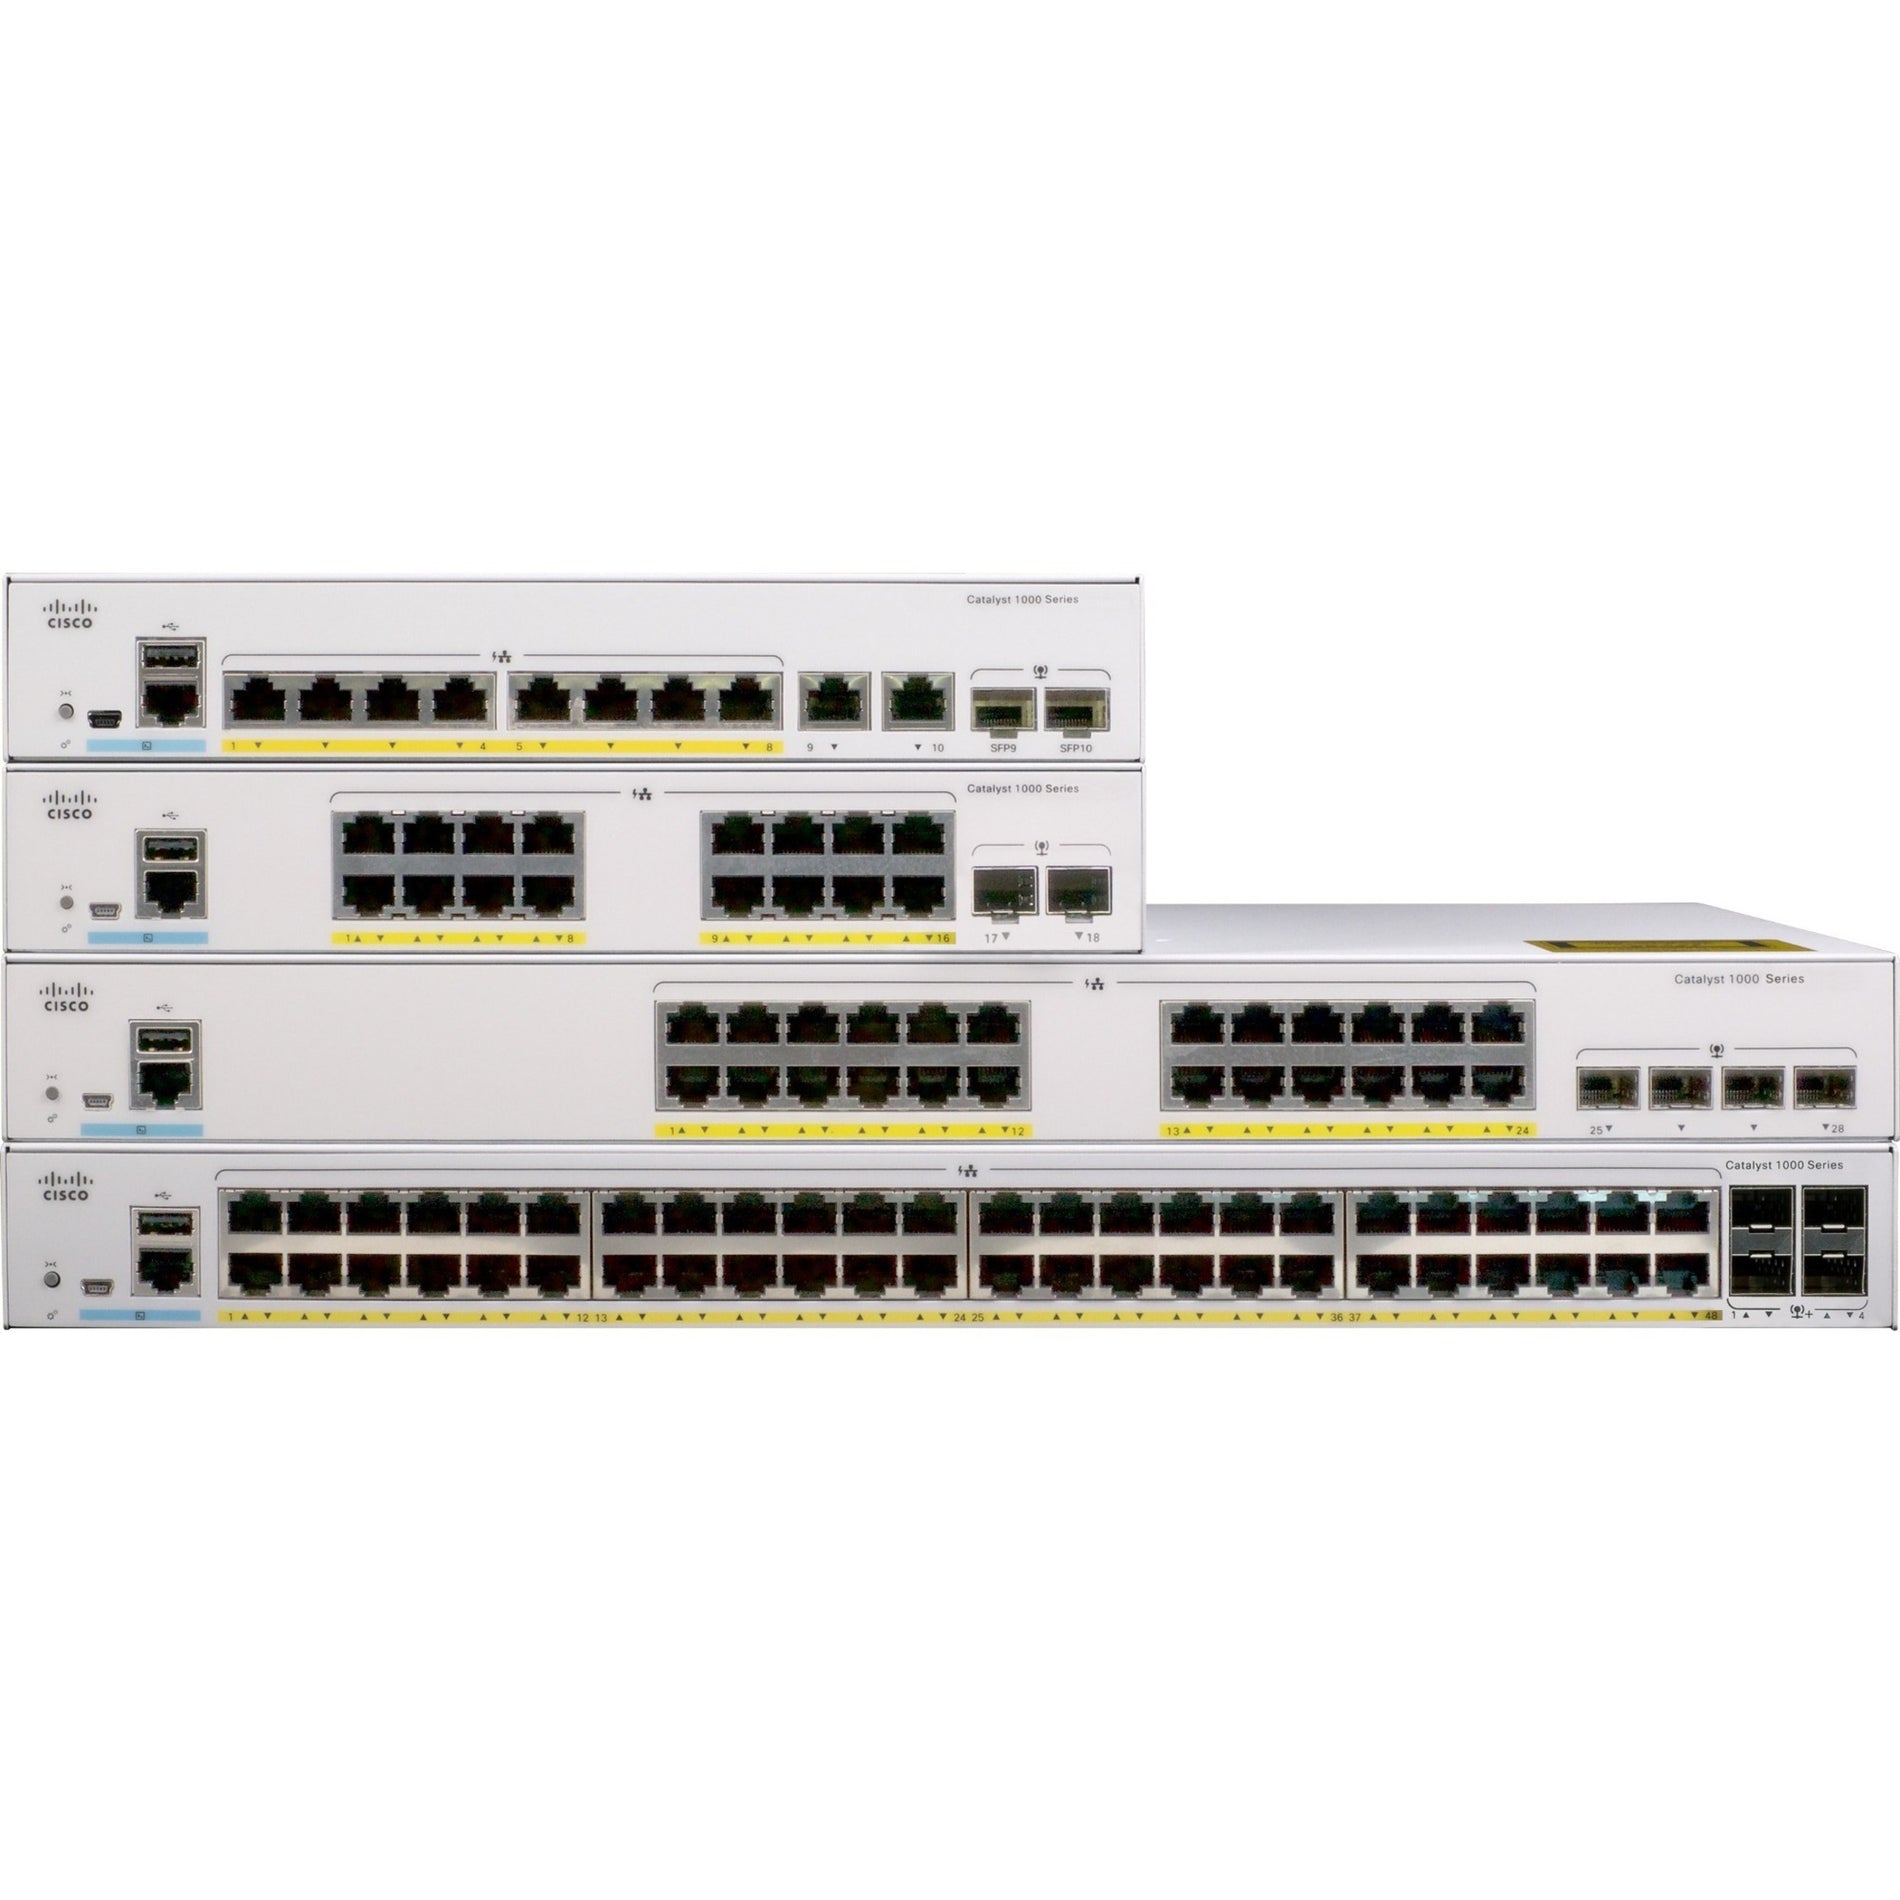 Cisco Catalyst C1000-8T Ethernet Switch (C1000-8T-E-2G-L)